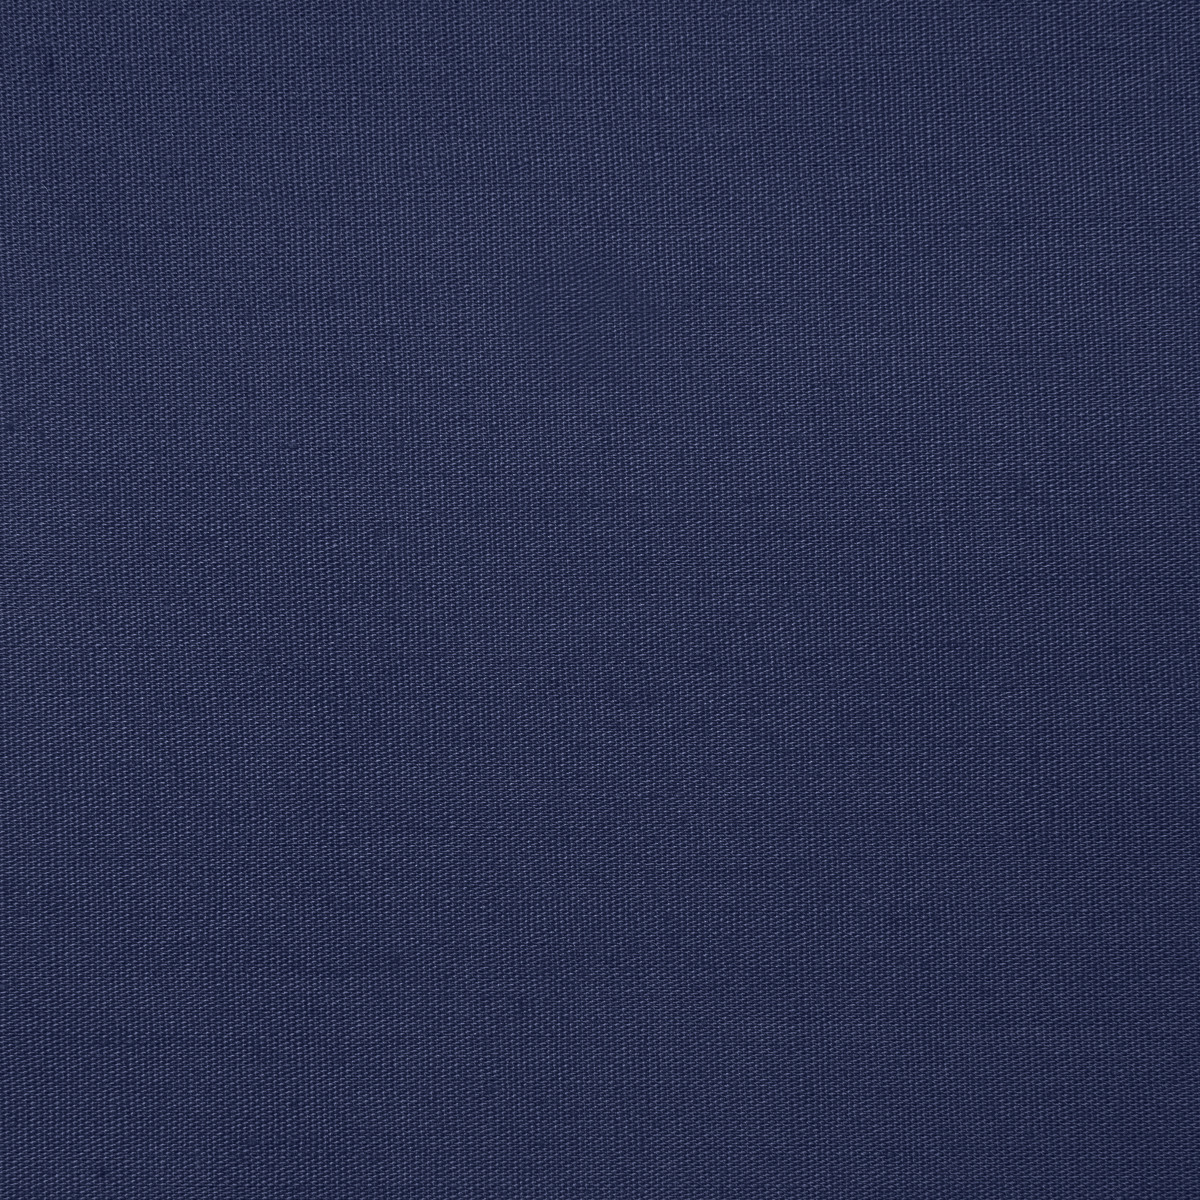 Biertischhusse bodenlang Polyester-Marine Blau / 200x50 cm